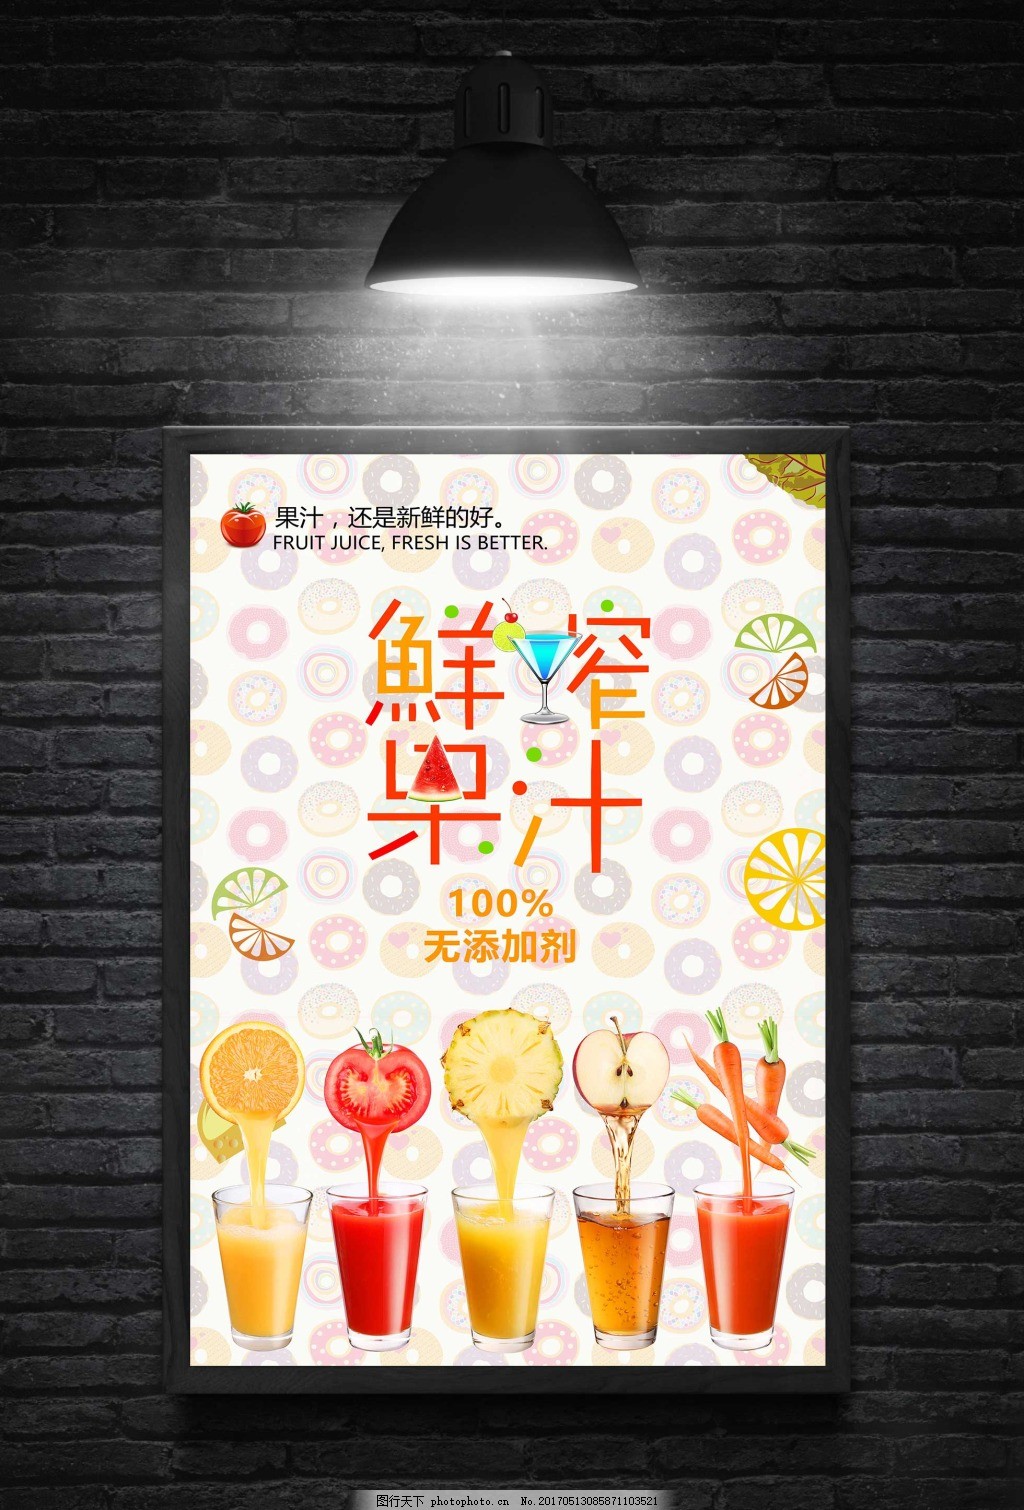 鲜榨果汁饮料海报,鲜榨果汁海报 鲜榨果汁招牌